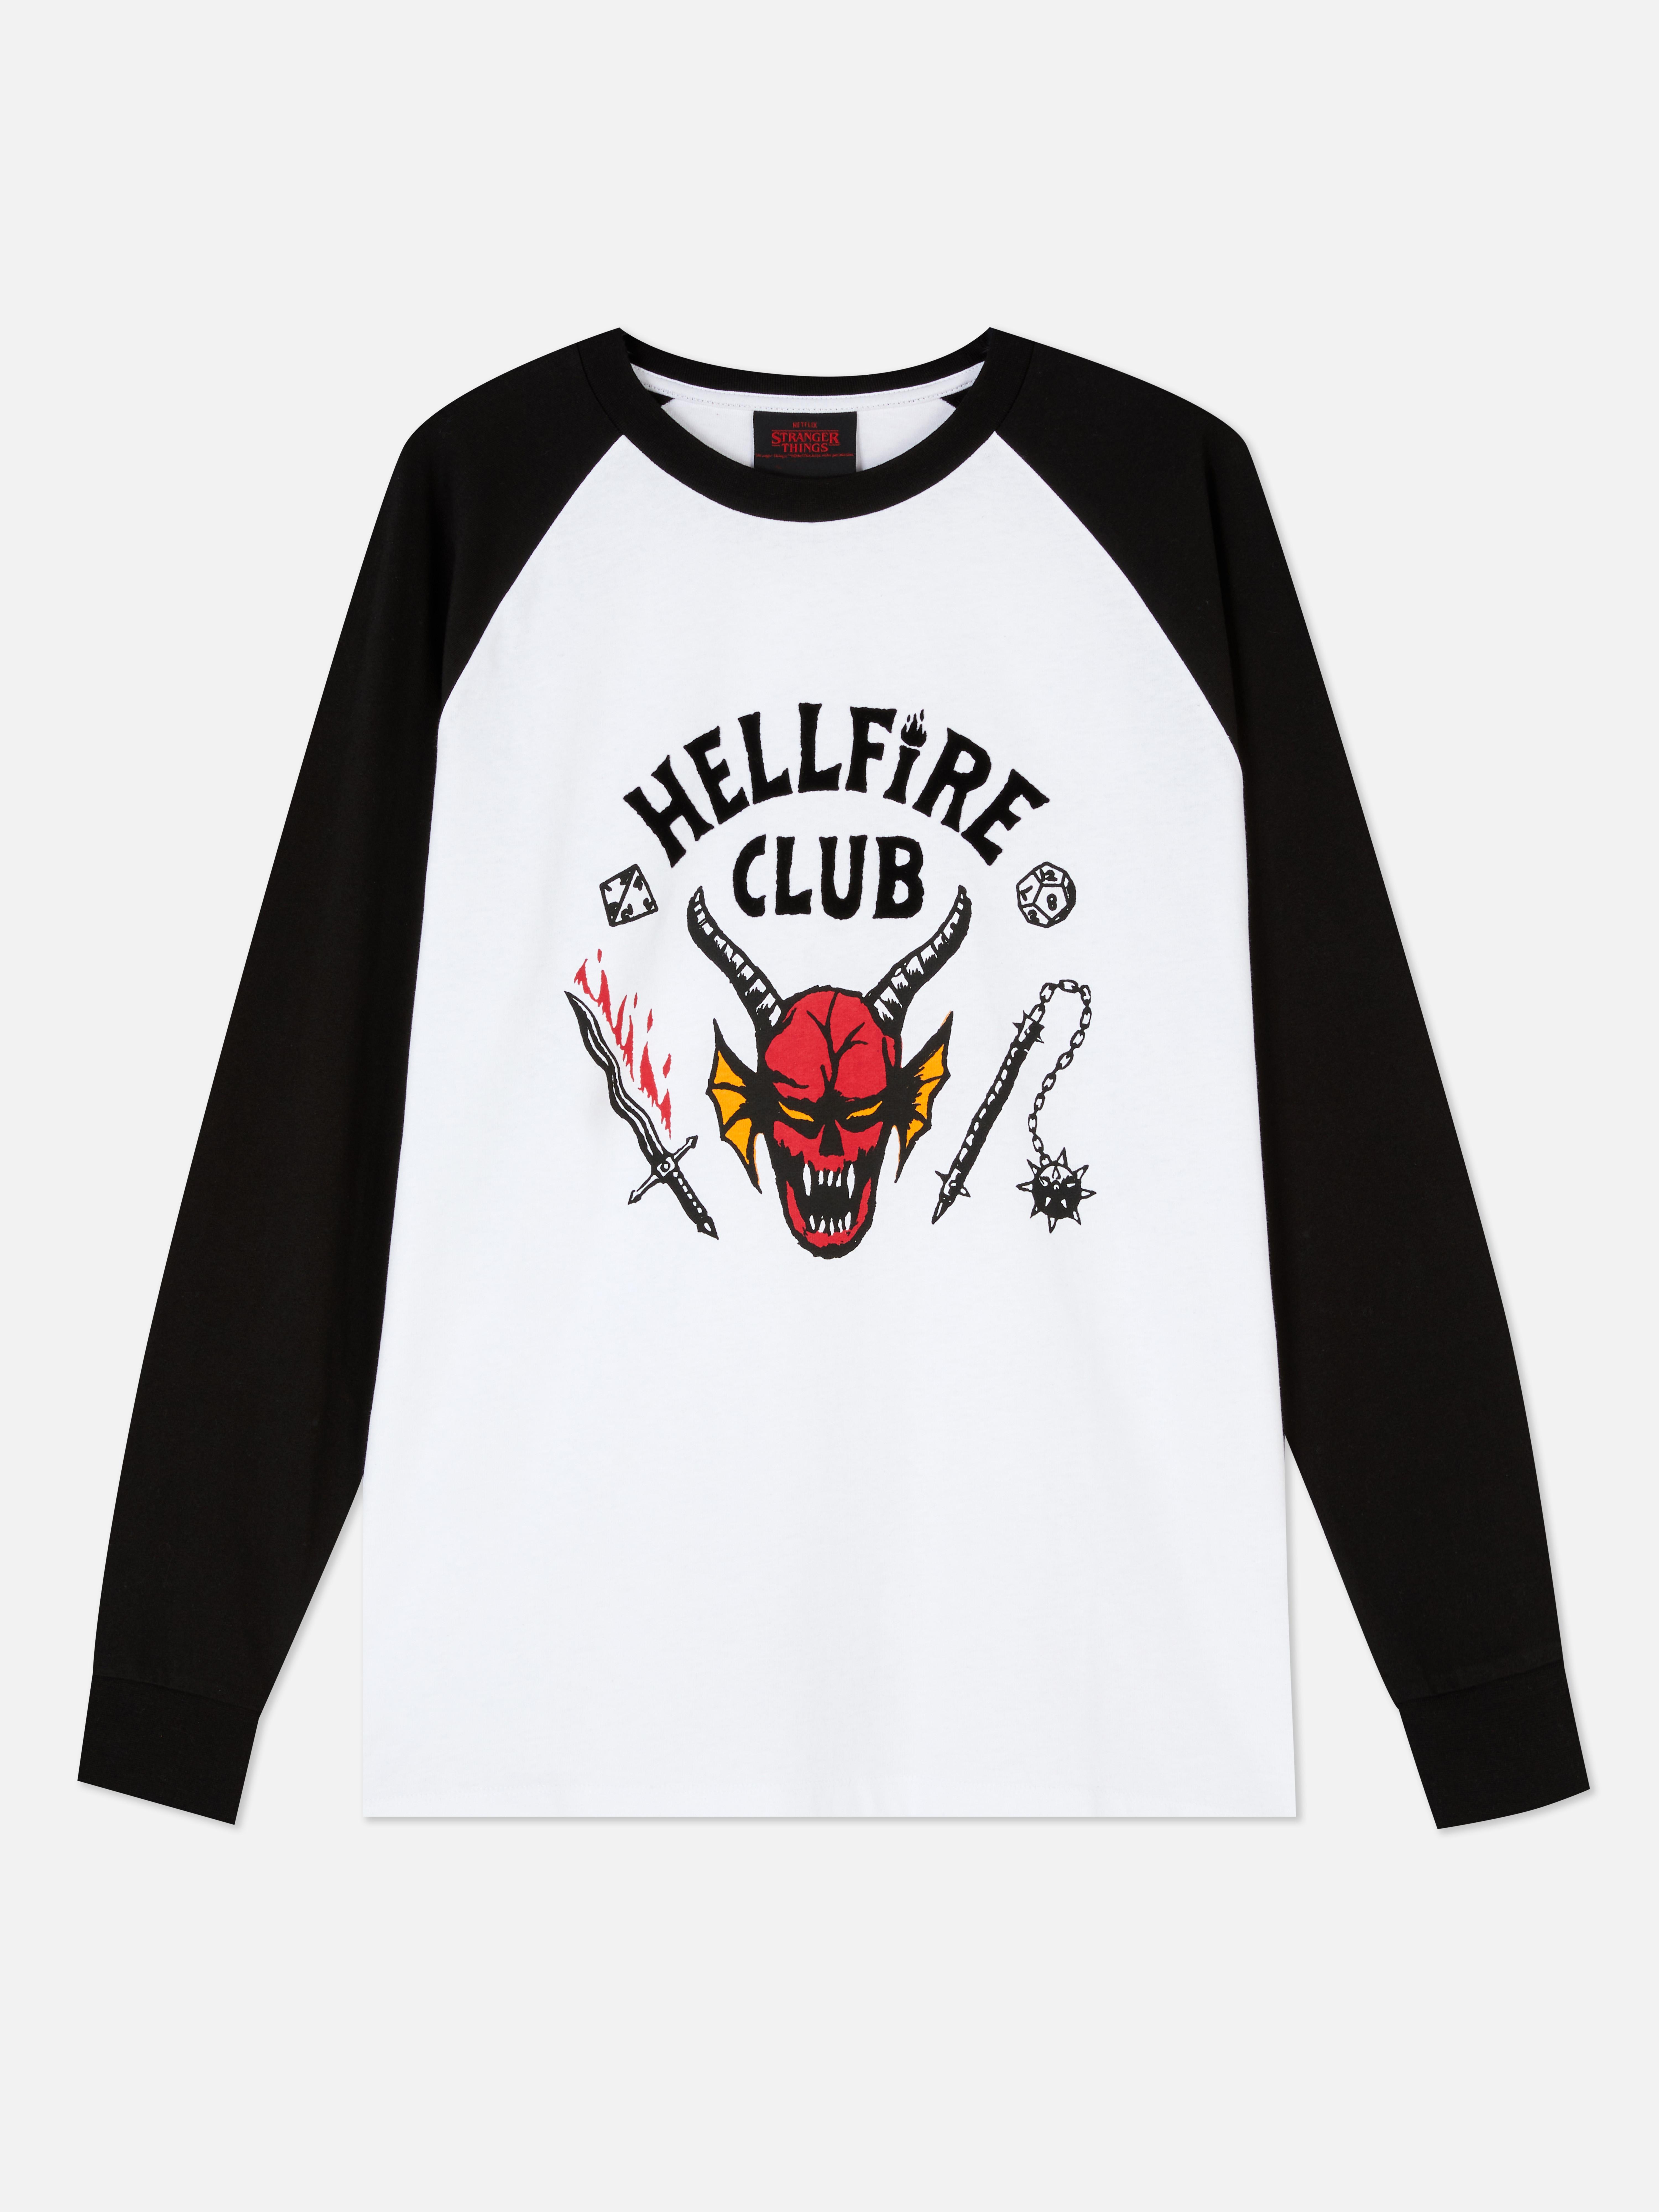 Camiseta de Hellfire Club de Stranger Things | Camisetas para hombre | Camisetas y partes de arriba para hombre | Ropa para hombre | Nuestra línea de moda masculina | Todos productos Primark | Primark España